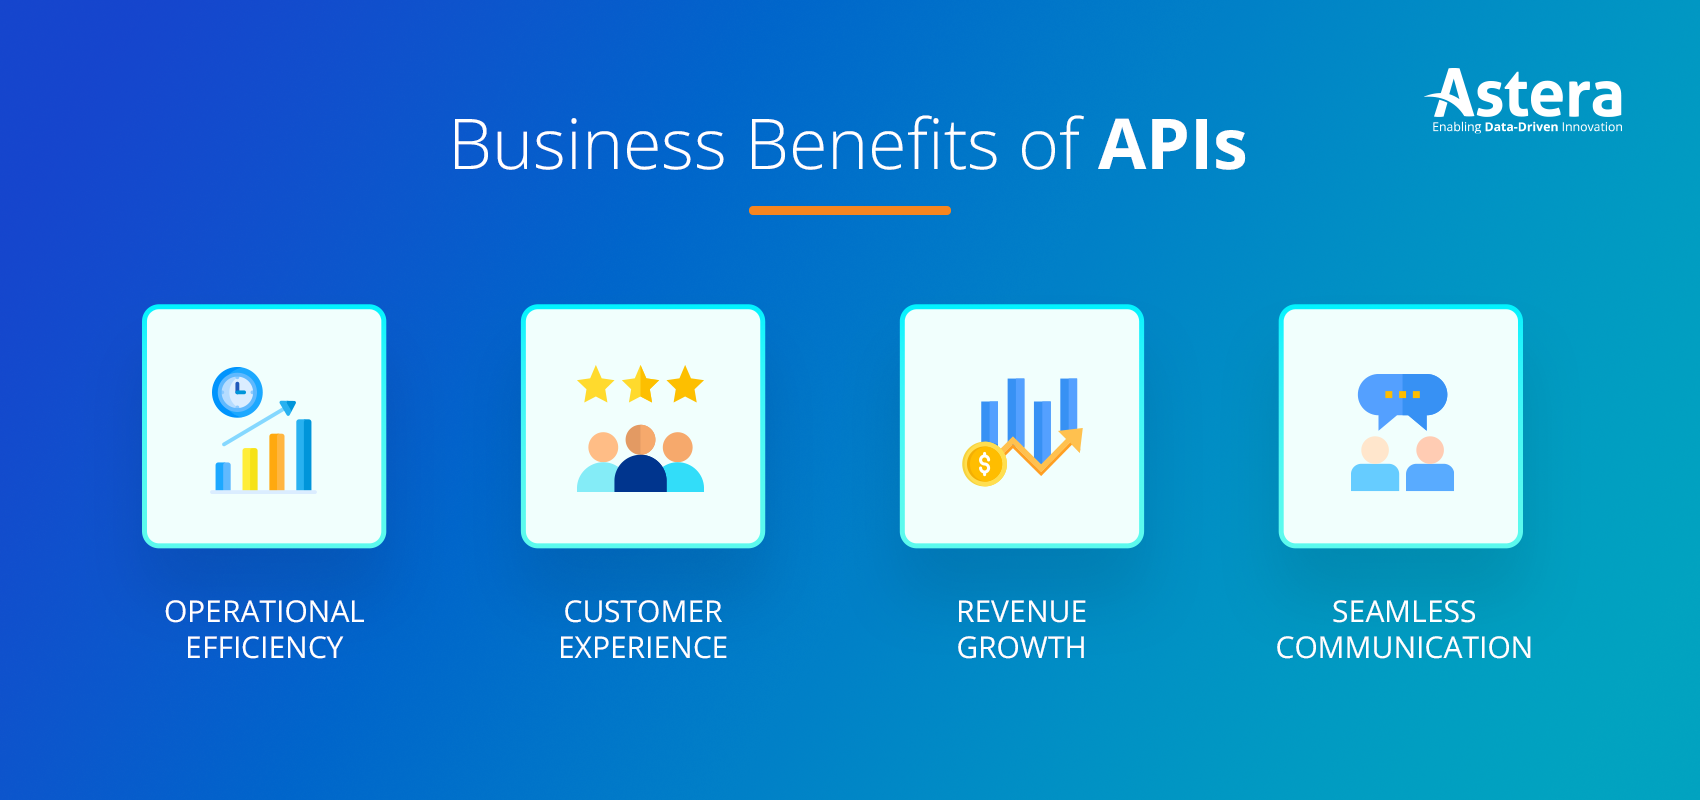 Benefits of APIs